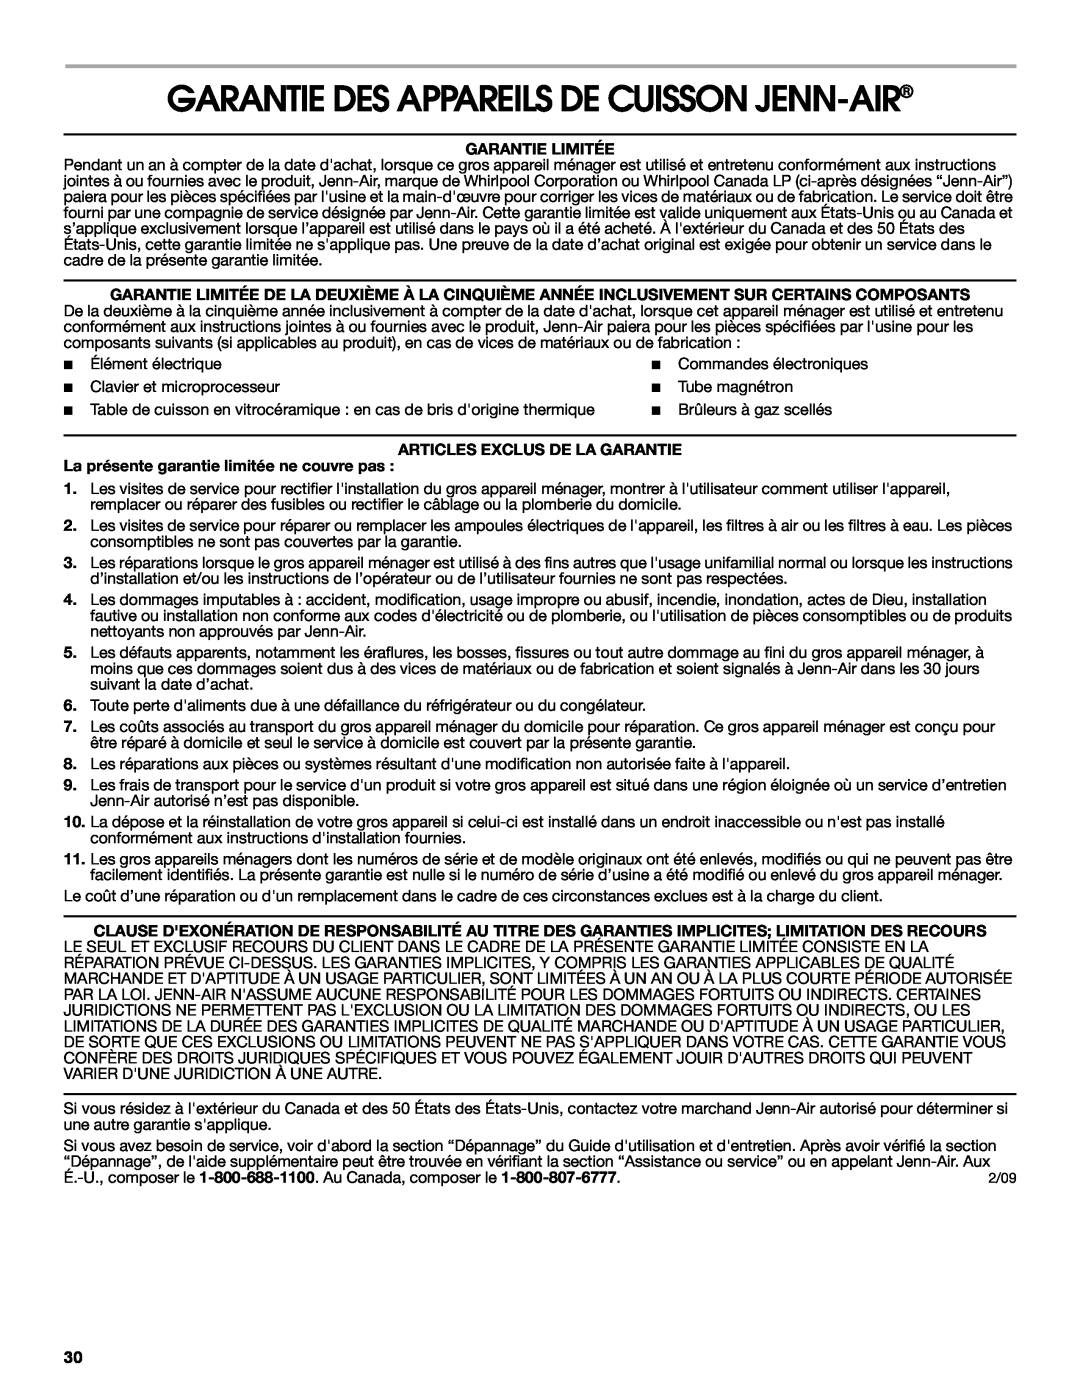 Jenn-Air JMD2124 manual Garantie Des Appareils De Cuisson Jenn-Air, Garantie Limitée, Articles Exclus De La Garantie 